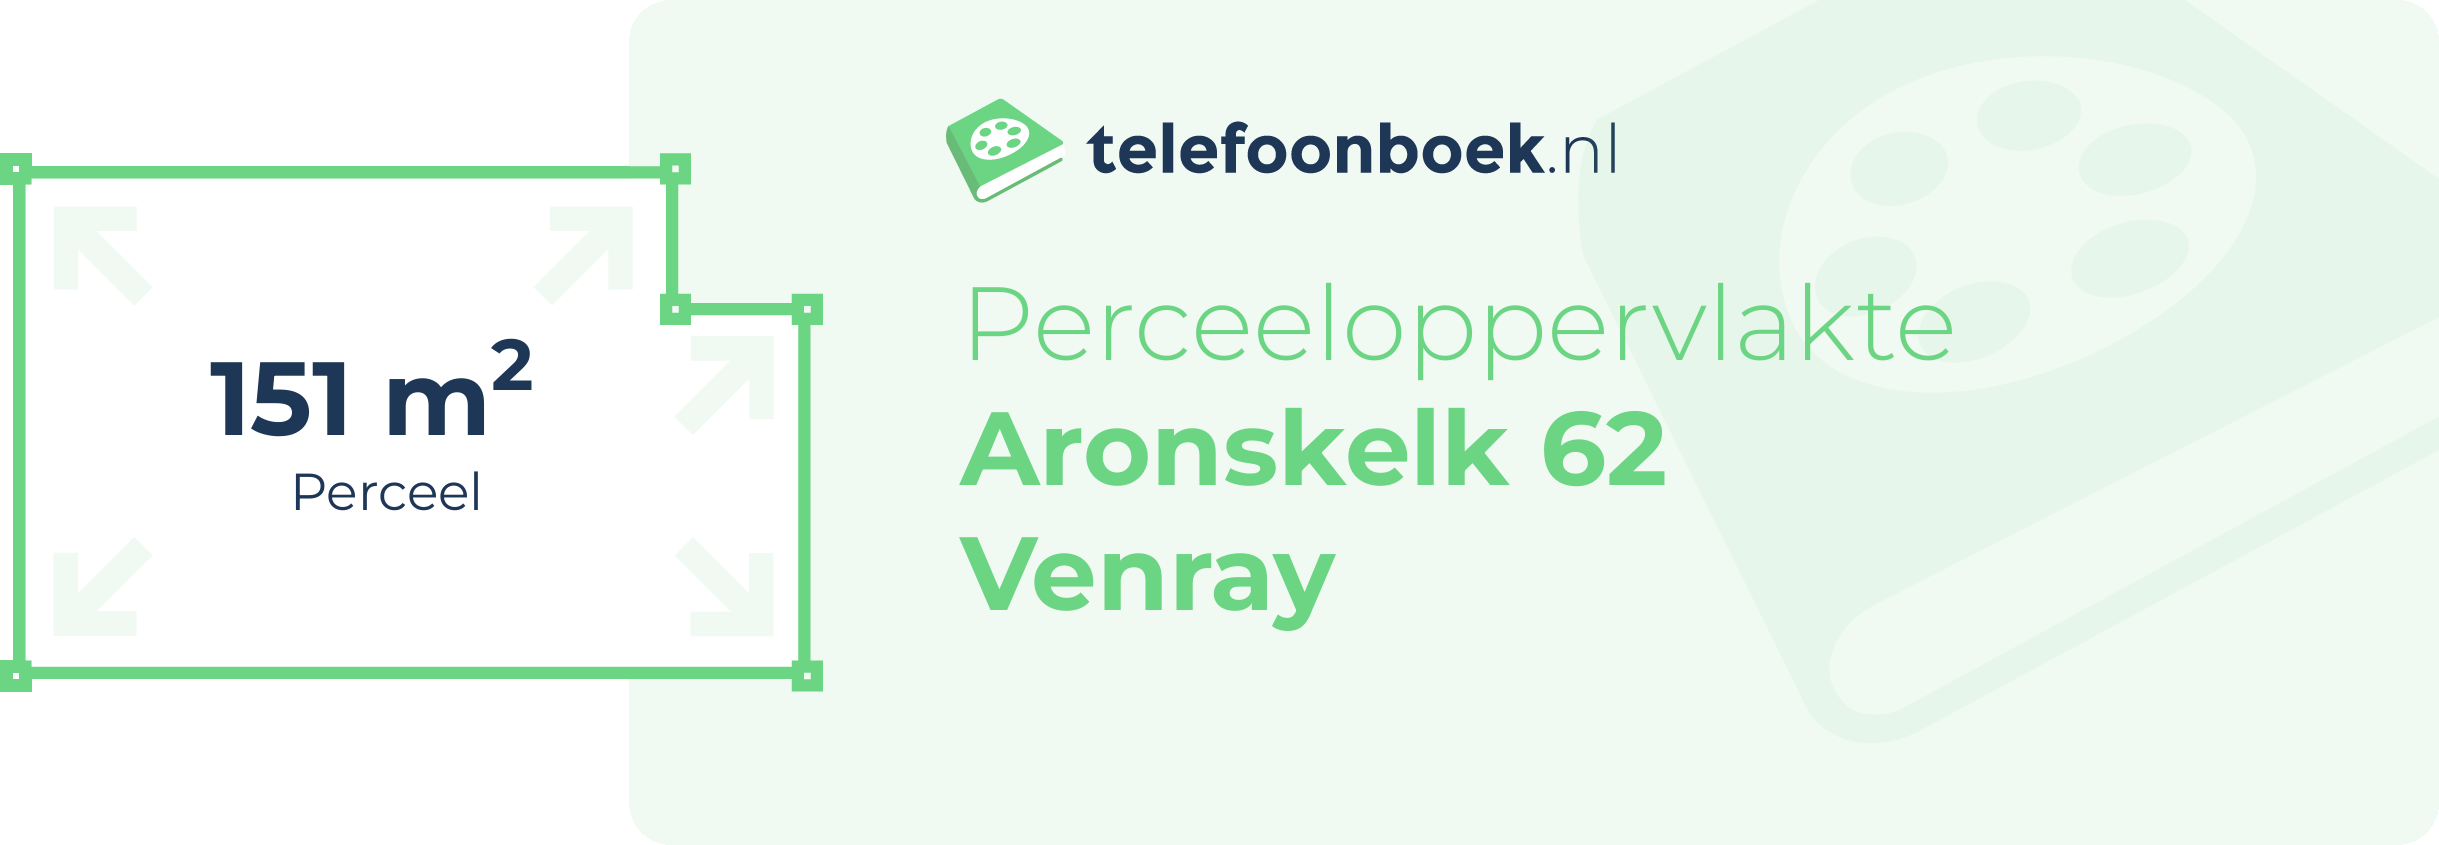 Perceeloppervlakte Aronskelk 62 Venray